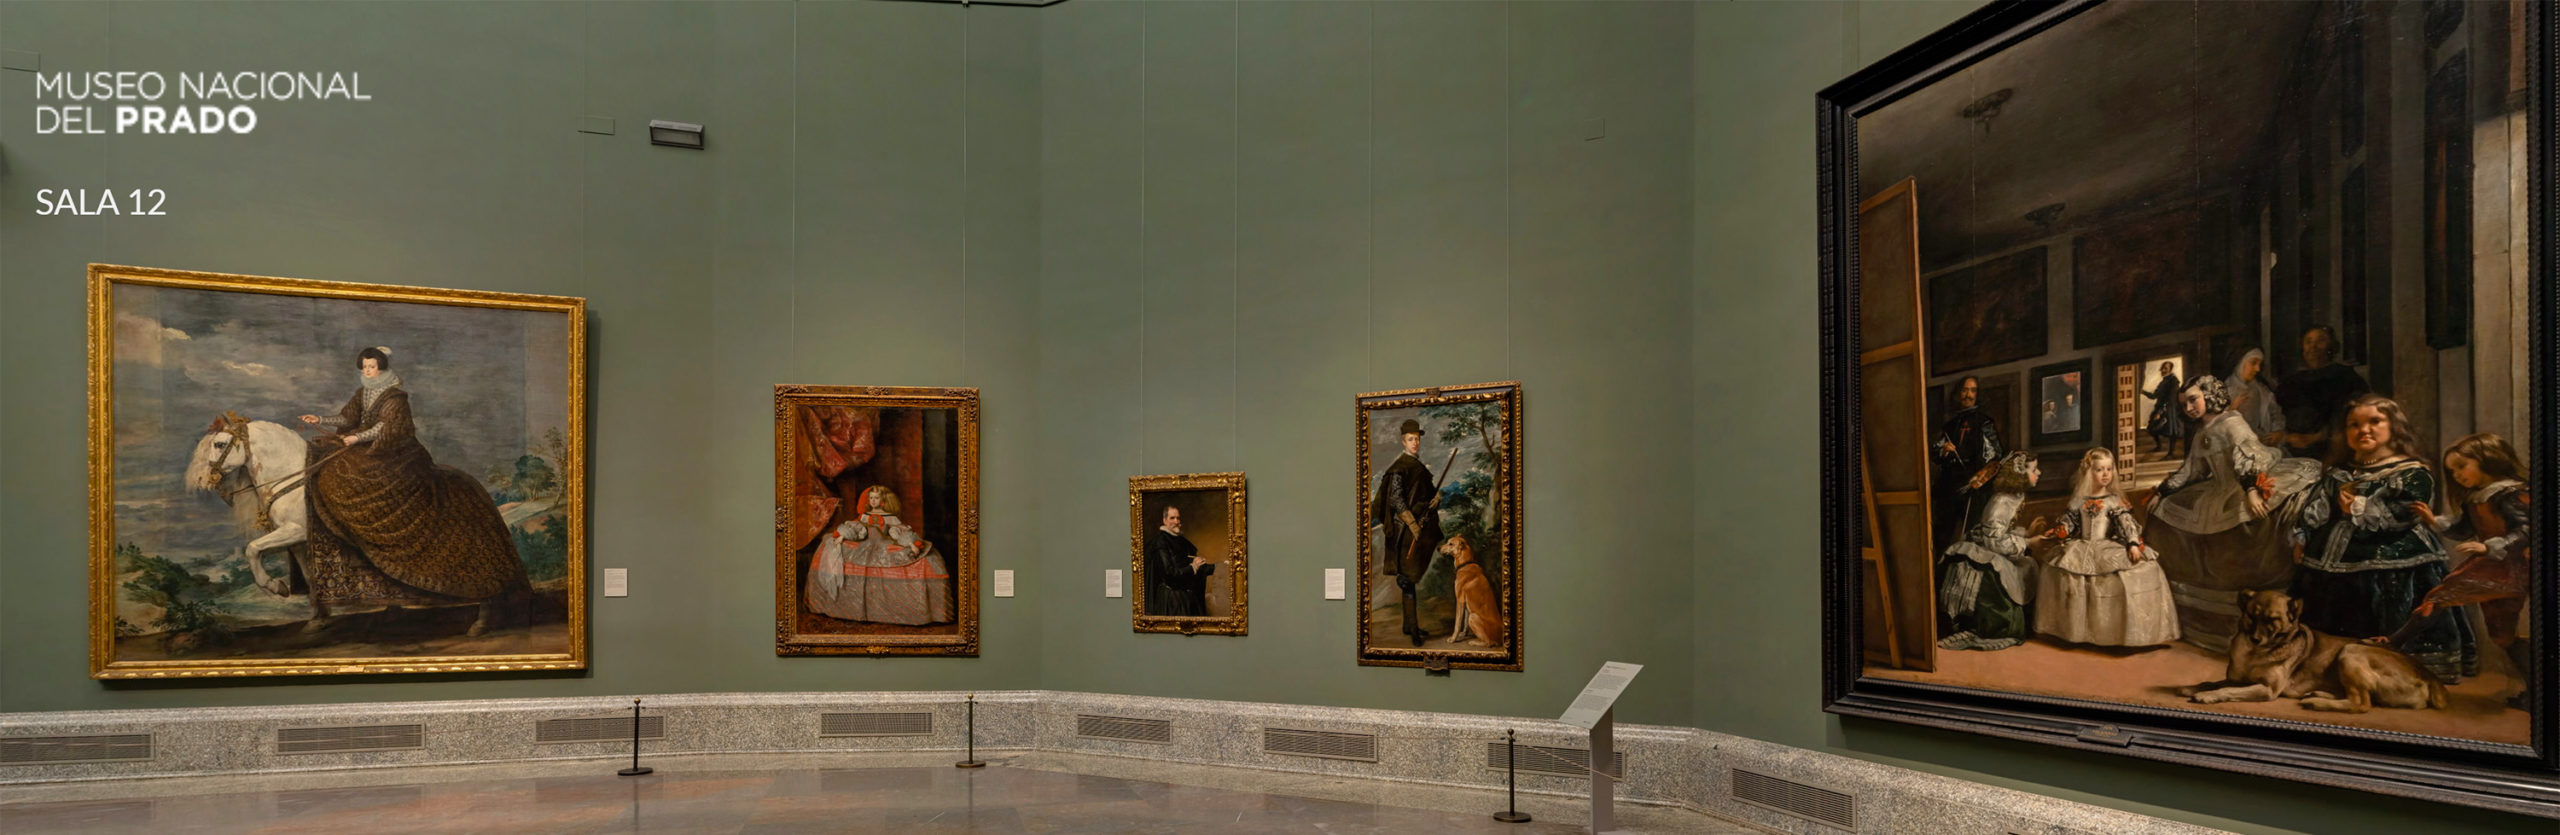 Museo Nacional del Prado - Museo Virtual y 10 recorridos guiados temáticos.